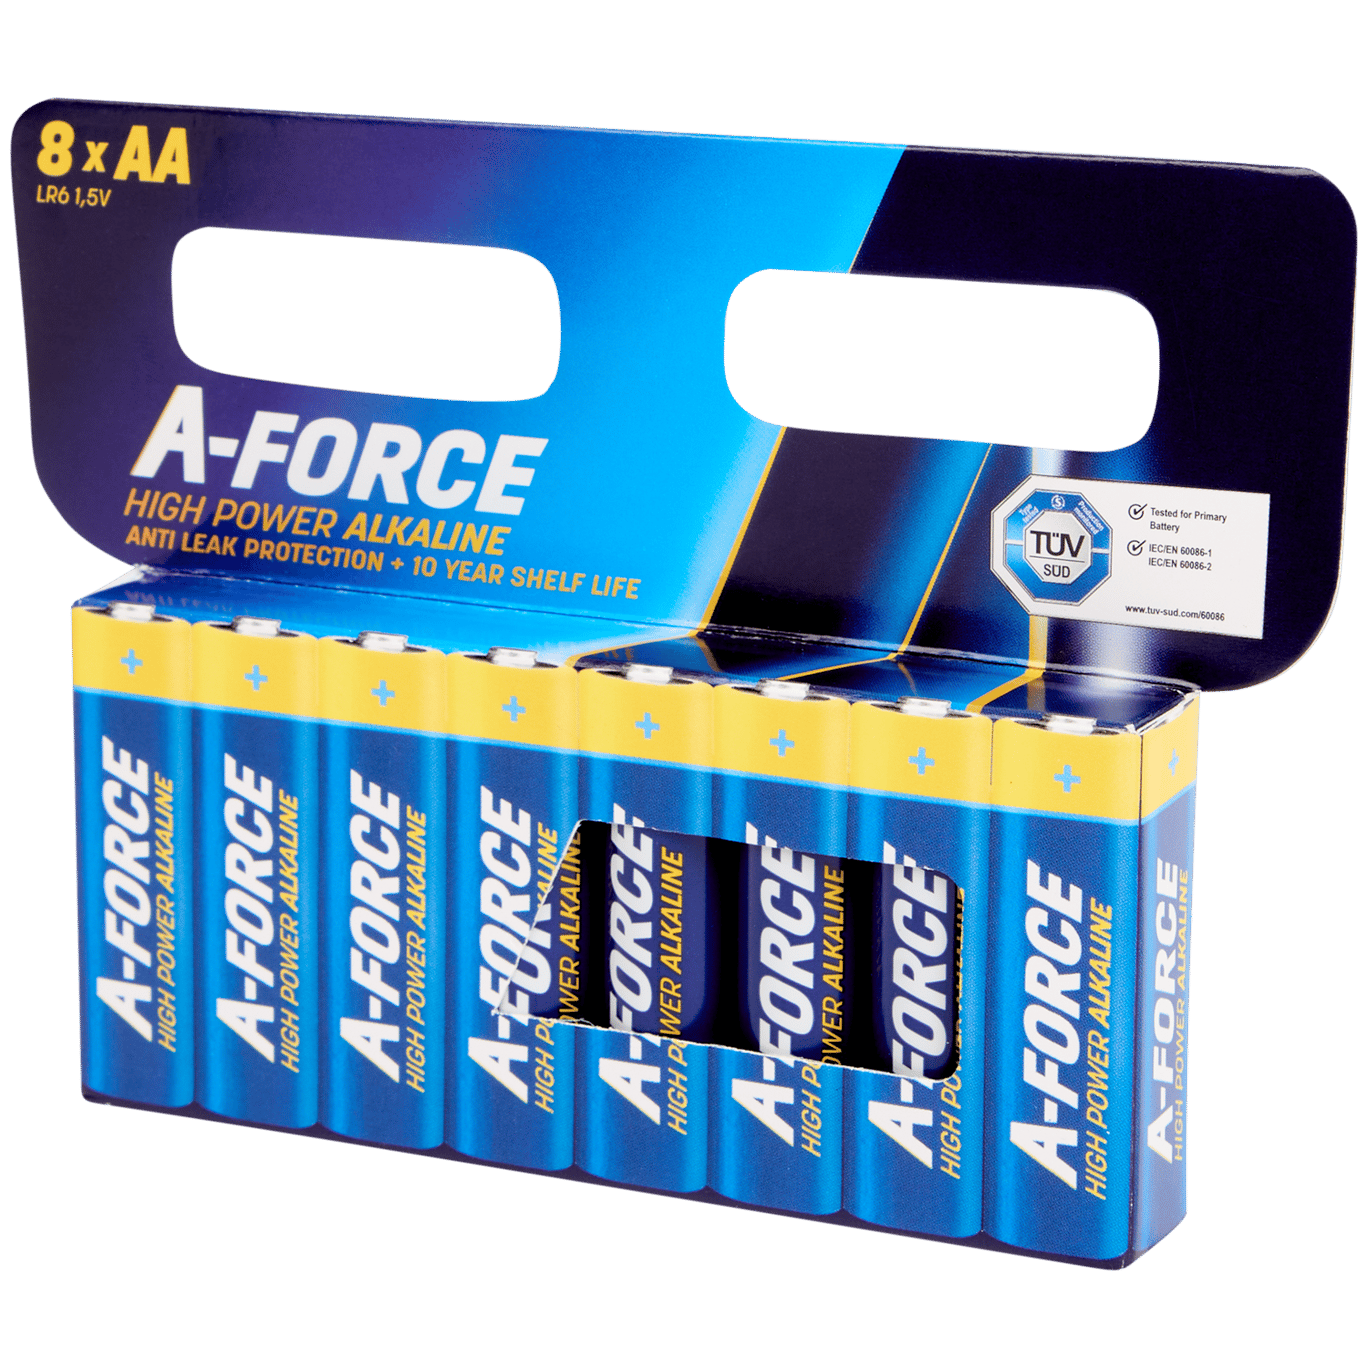 Pilhas A-Force High Power Alkaline AA